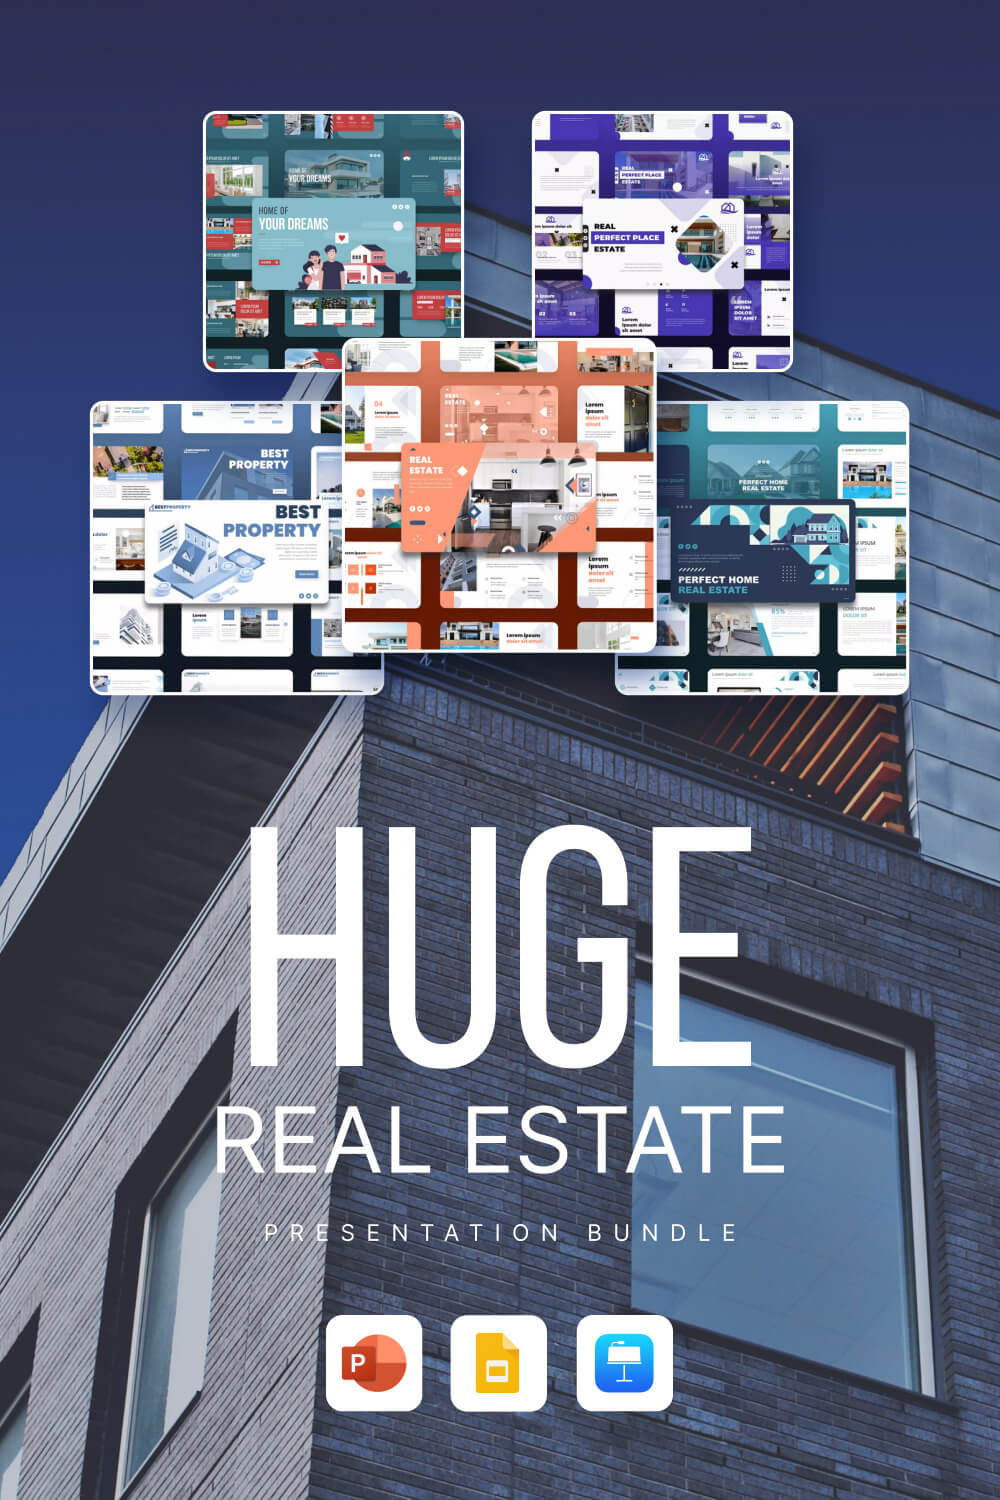 huge real estate presentation bundle pinterest image.